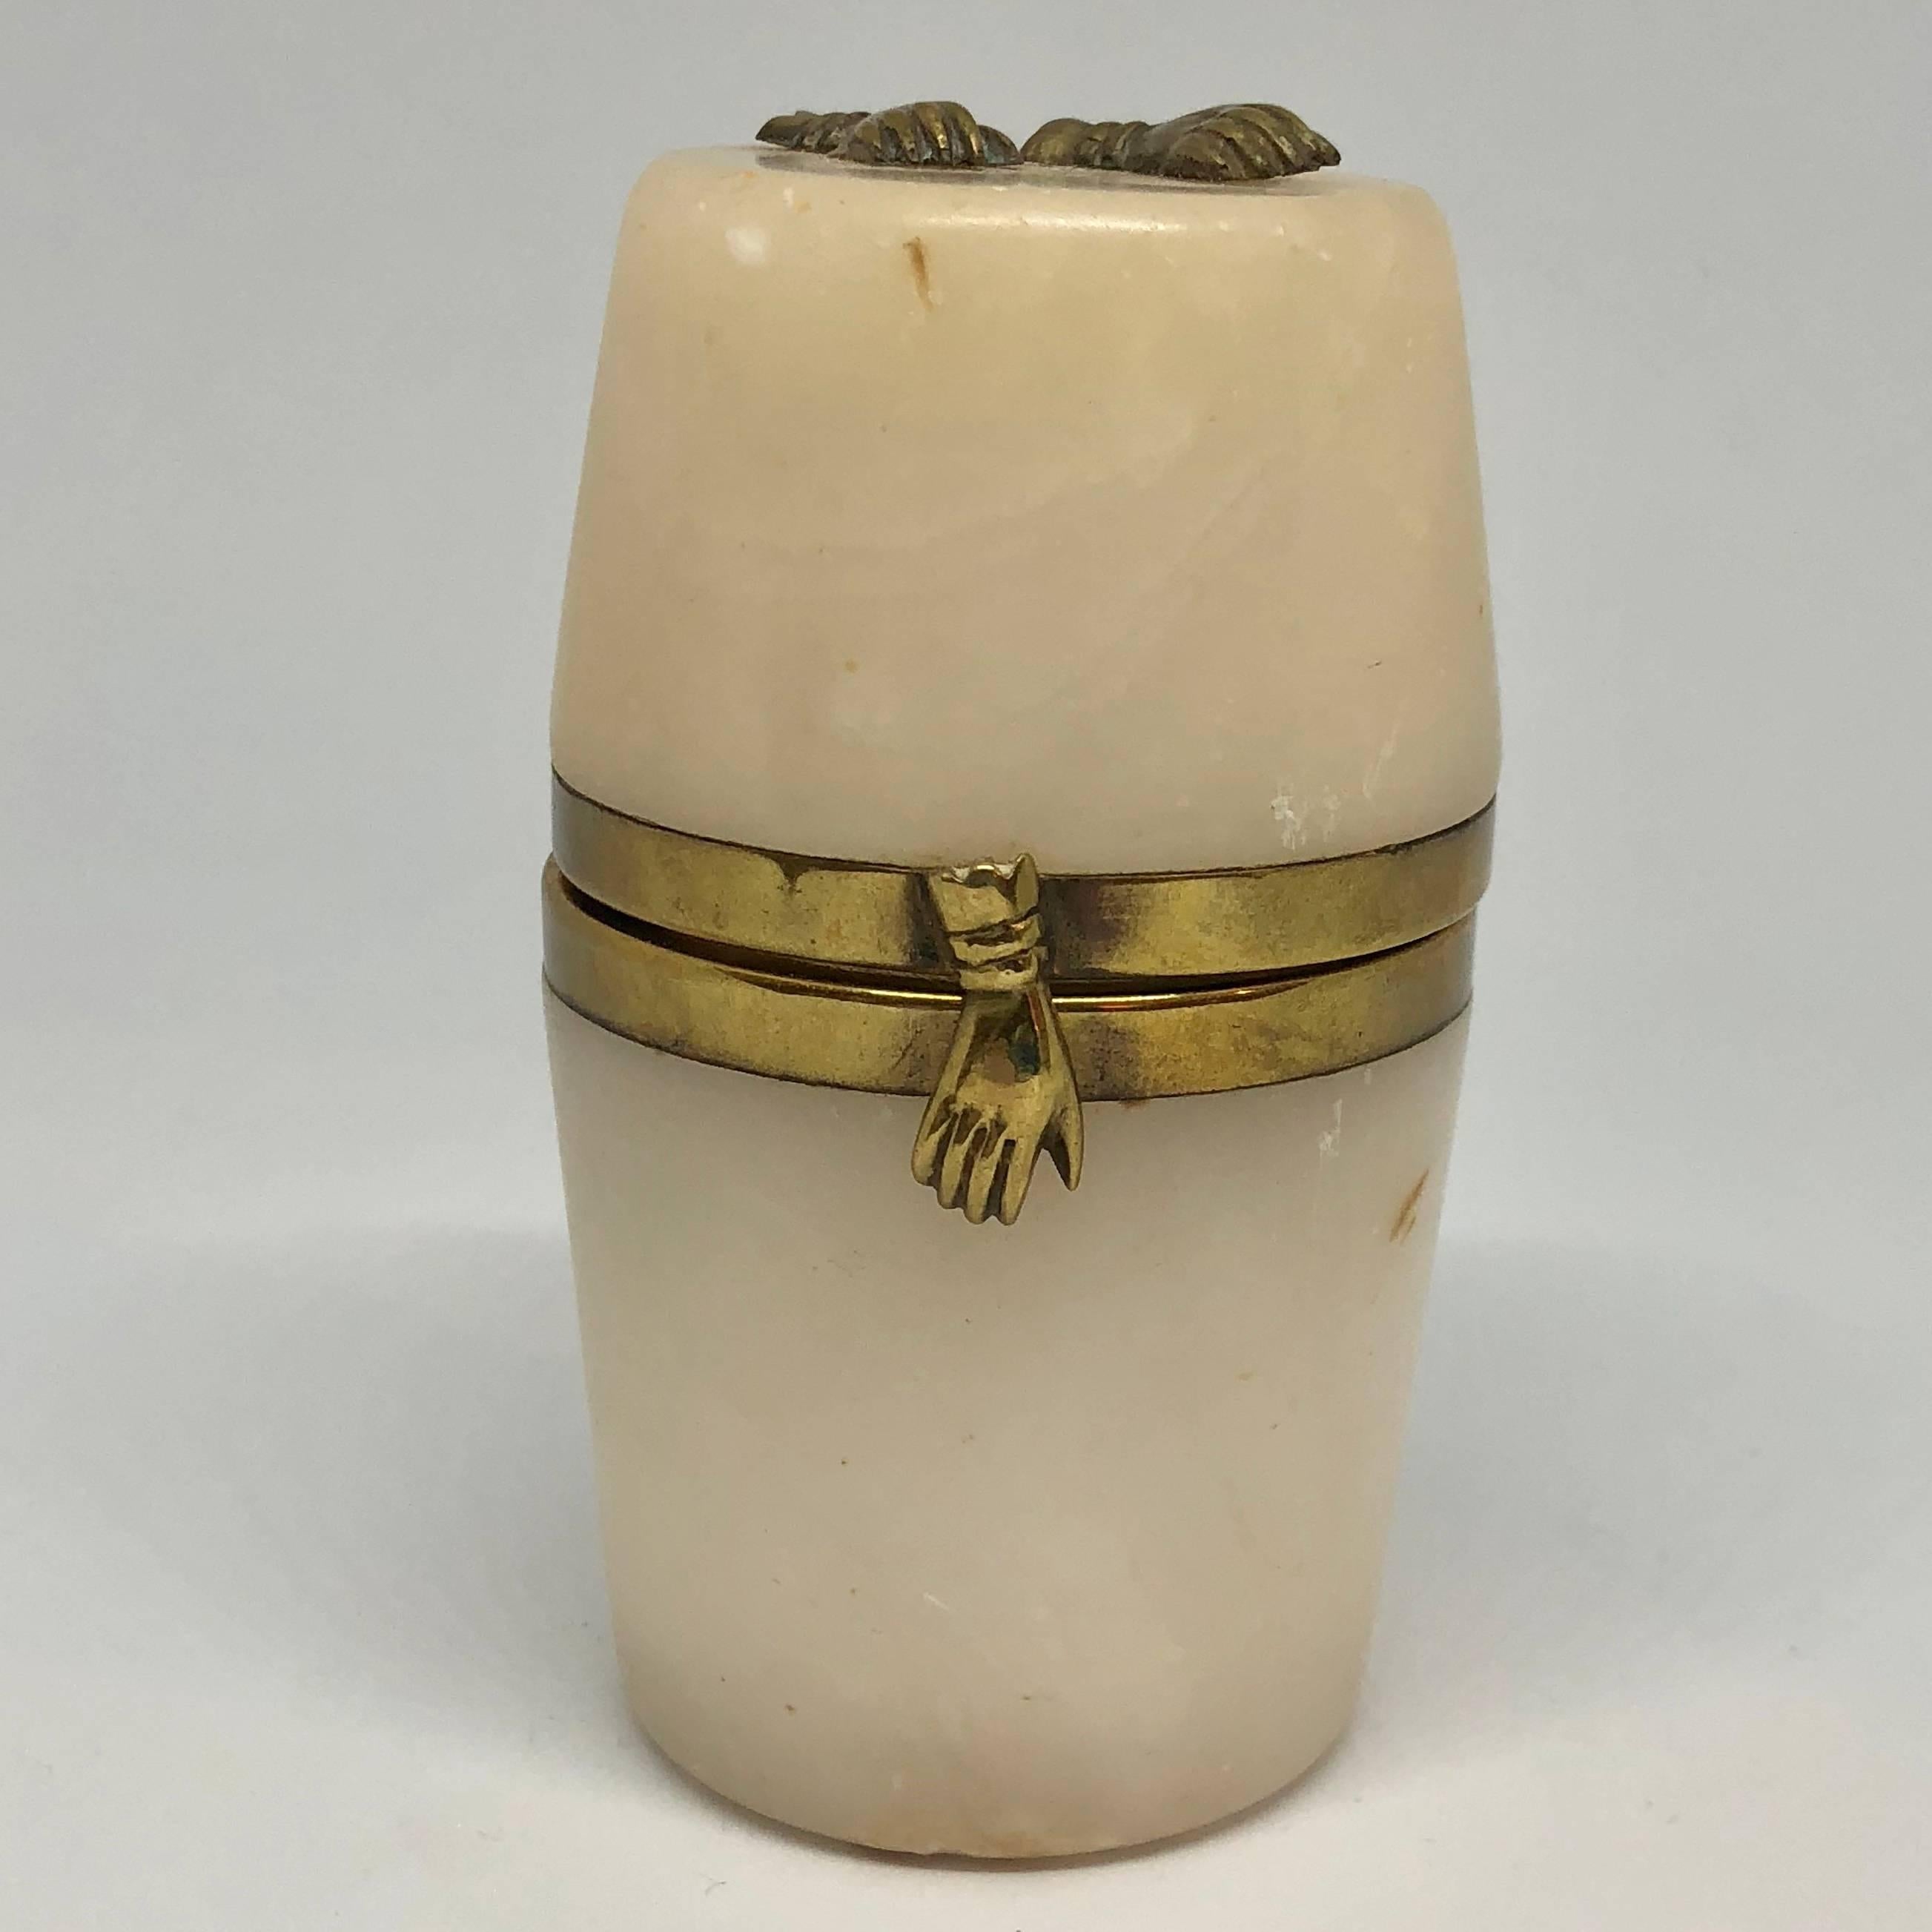 Petite boîte à bijoux du 18e siècle en forme de tonneau en albâtre avec décor de mains en laiton.